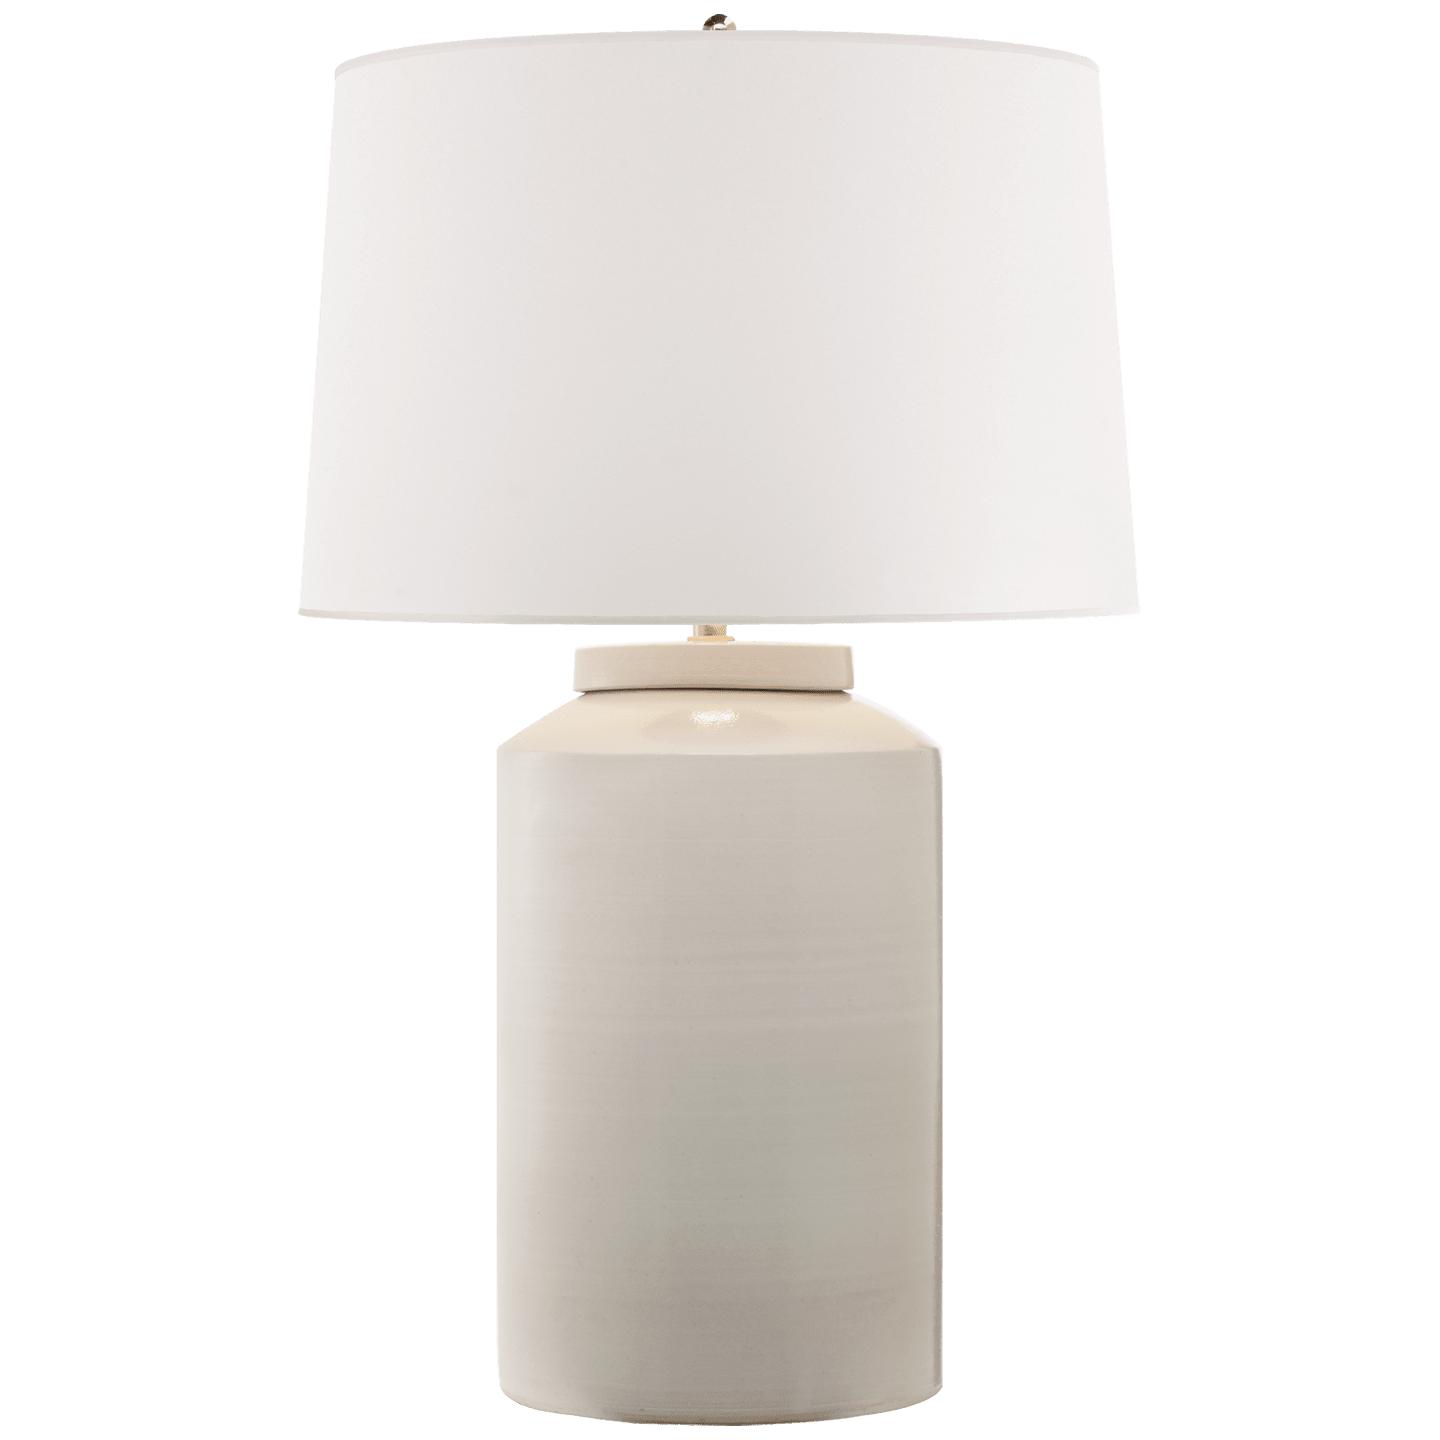 Купить Настольная лампа Carter Large Table Lamp в интернет-магазине roooms.ru